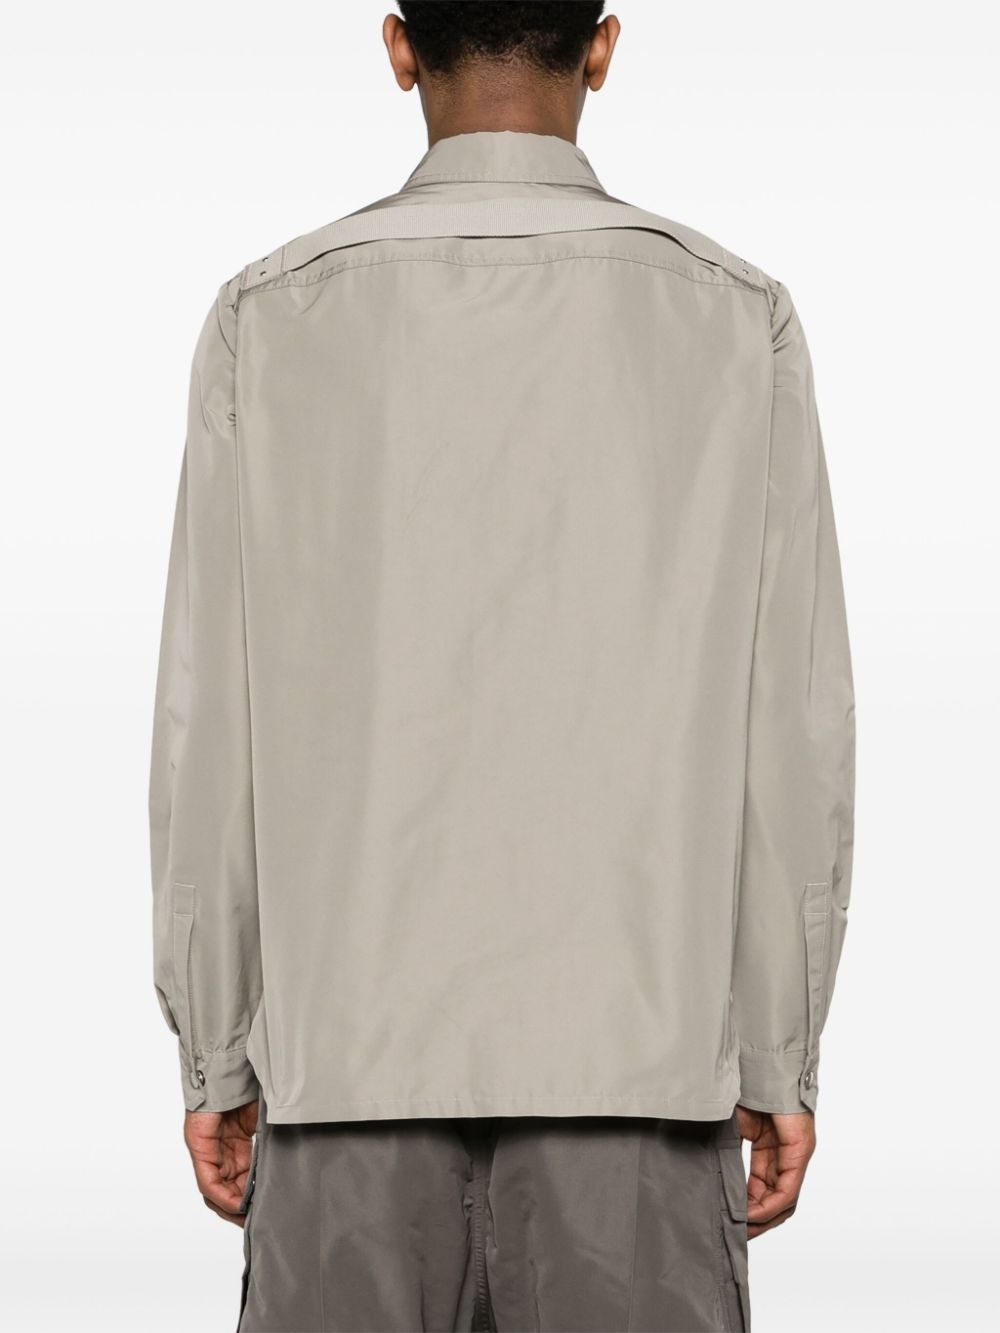 Fogpocket shirt jacket - 4